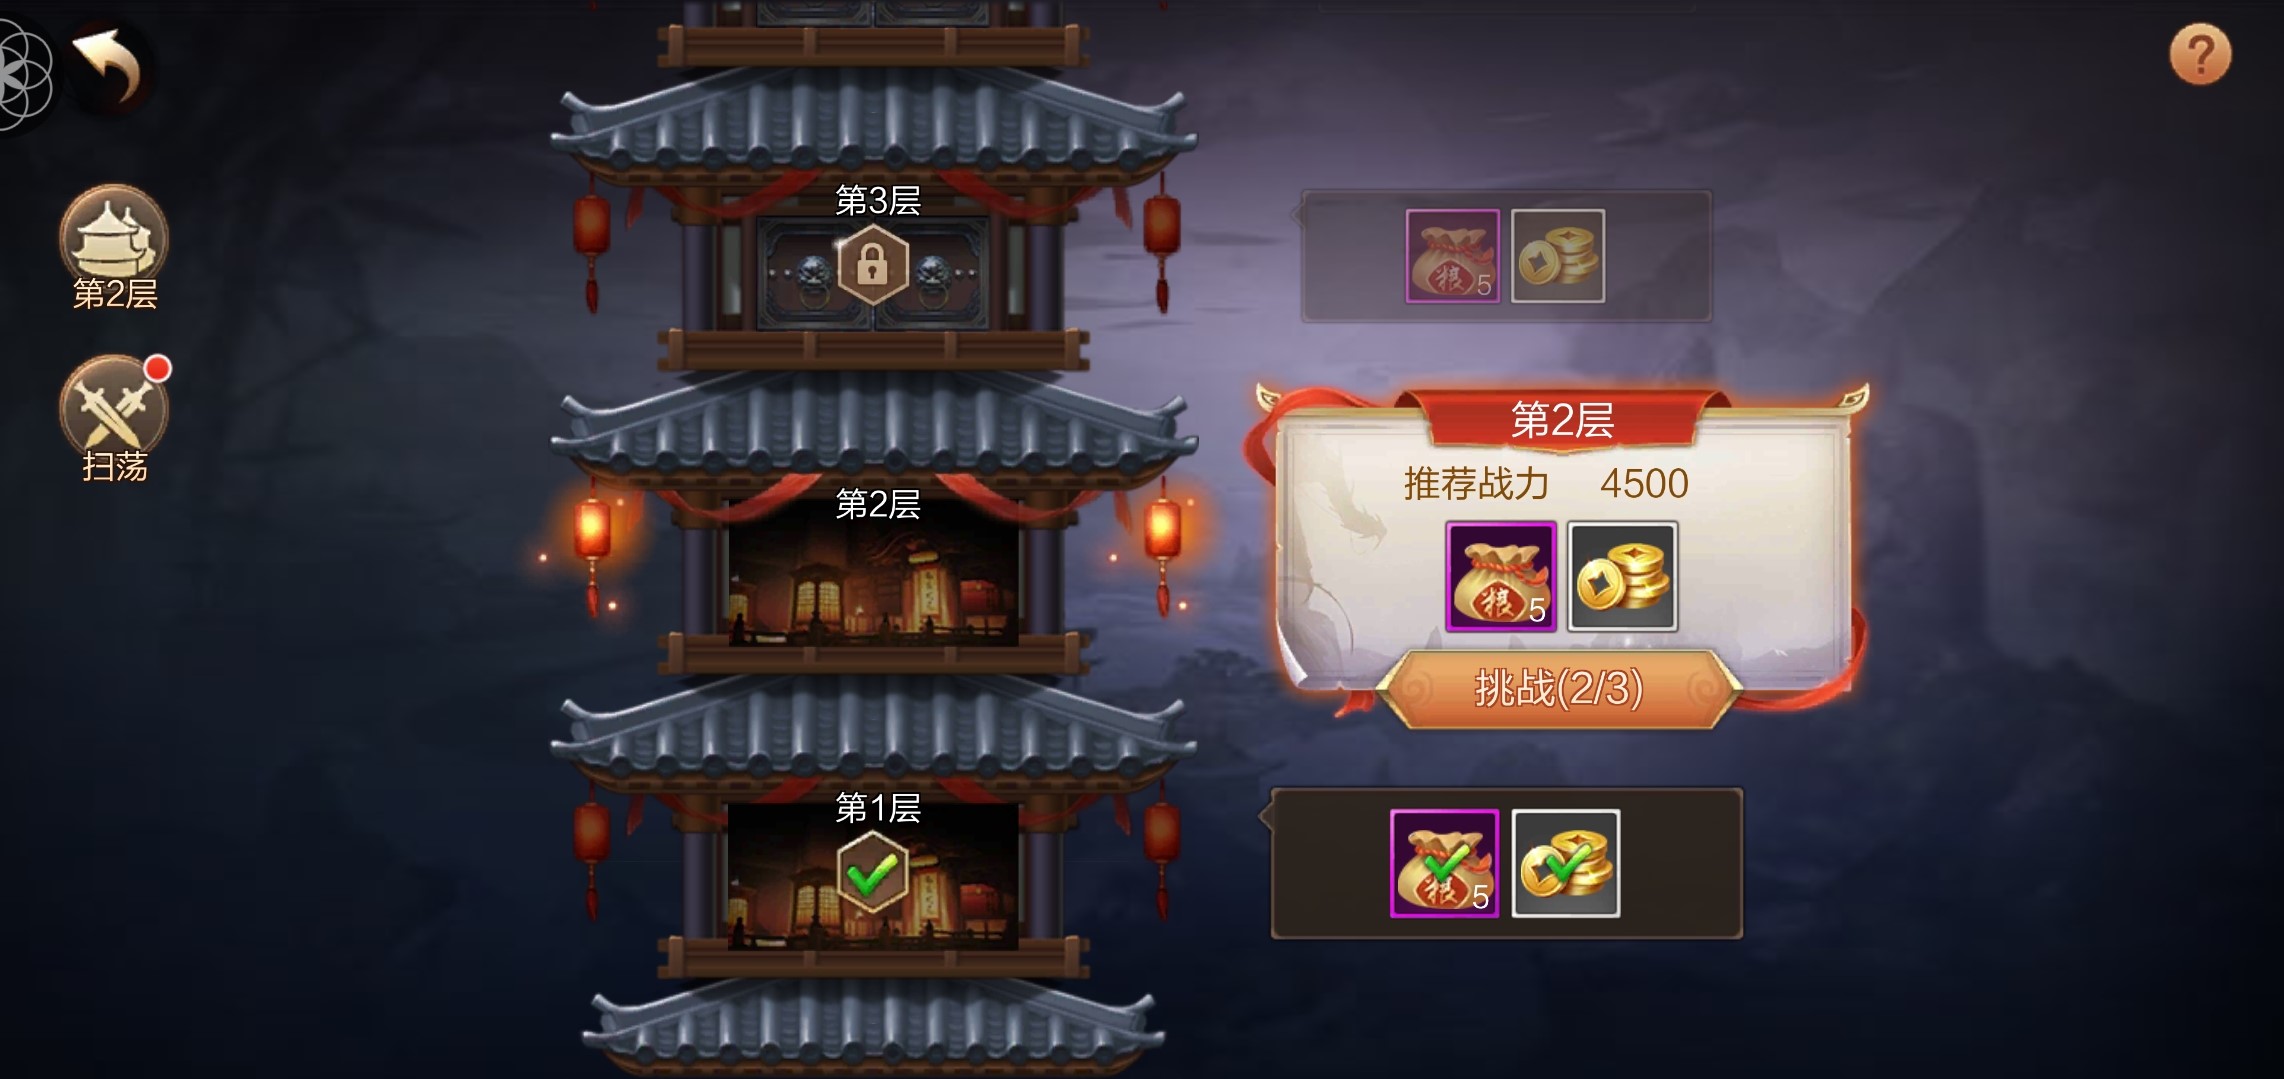 Trải nghiệm trước Tuyệt Thế Vô Song Mobile bản Trung Quốc - Game MMO của Changyou được SohaGame phát hành tại VN